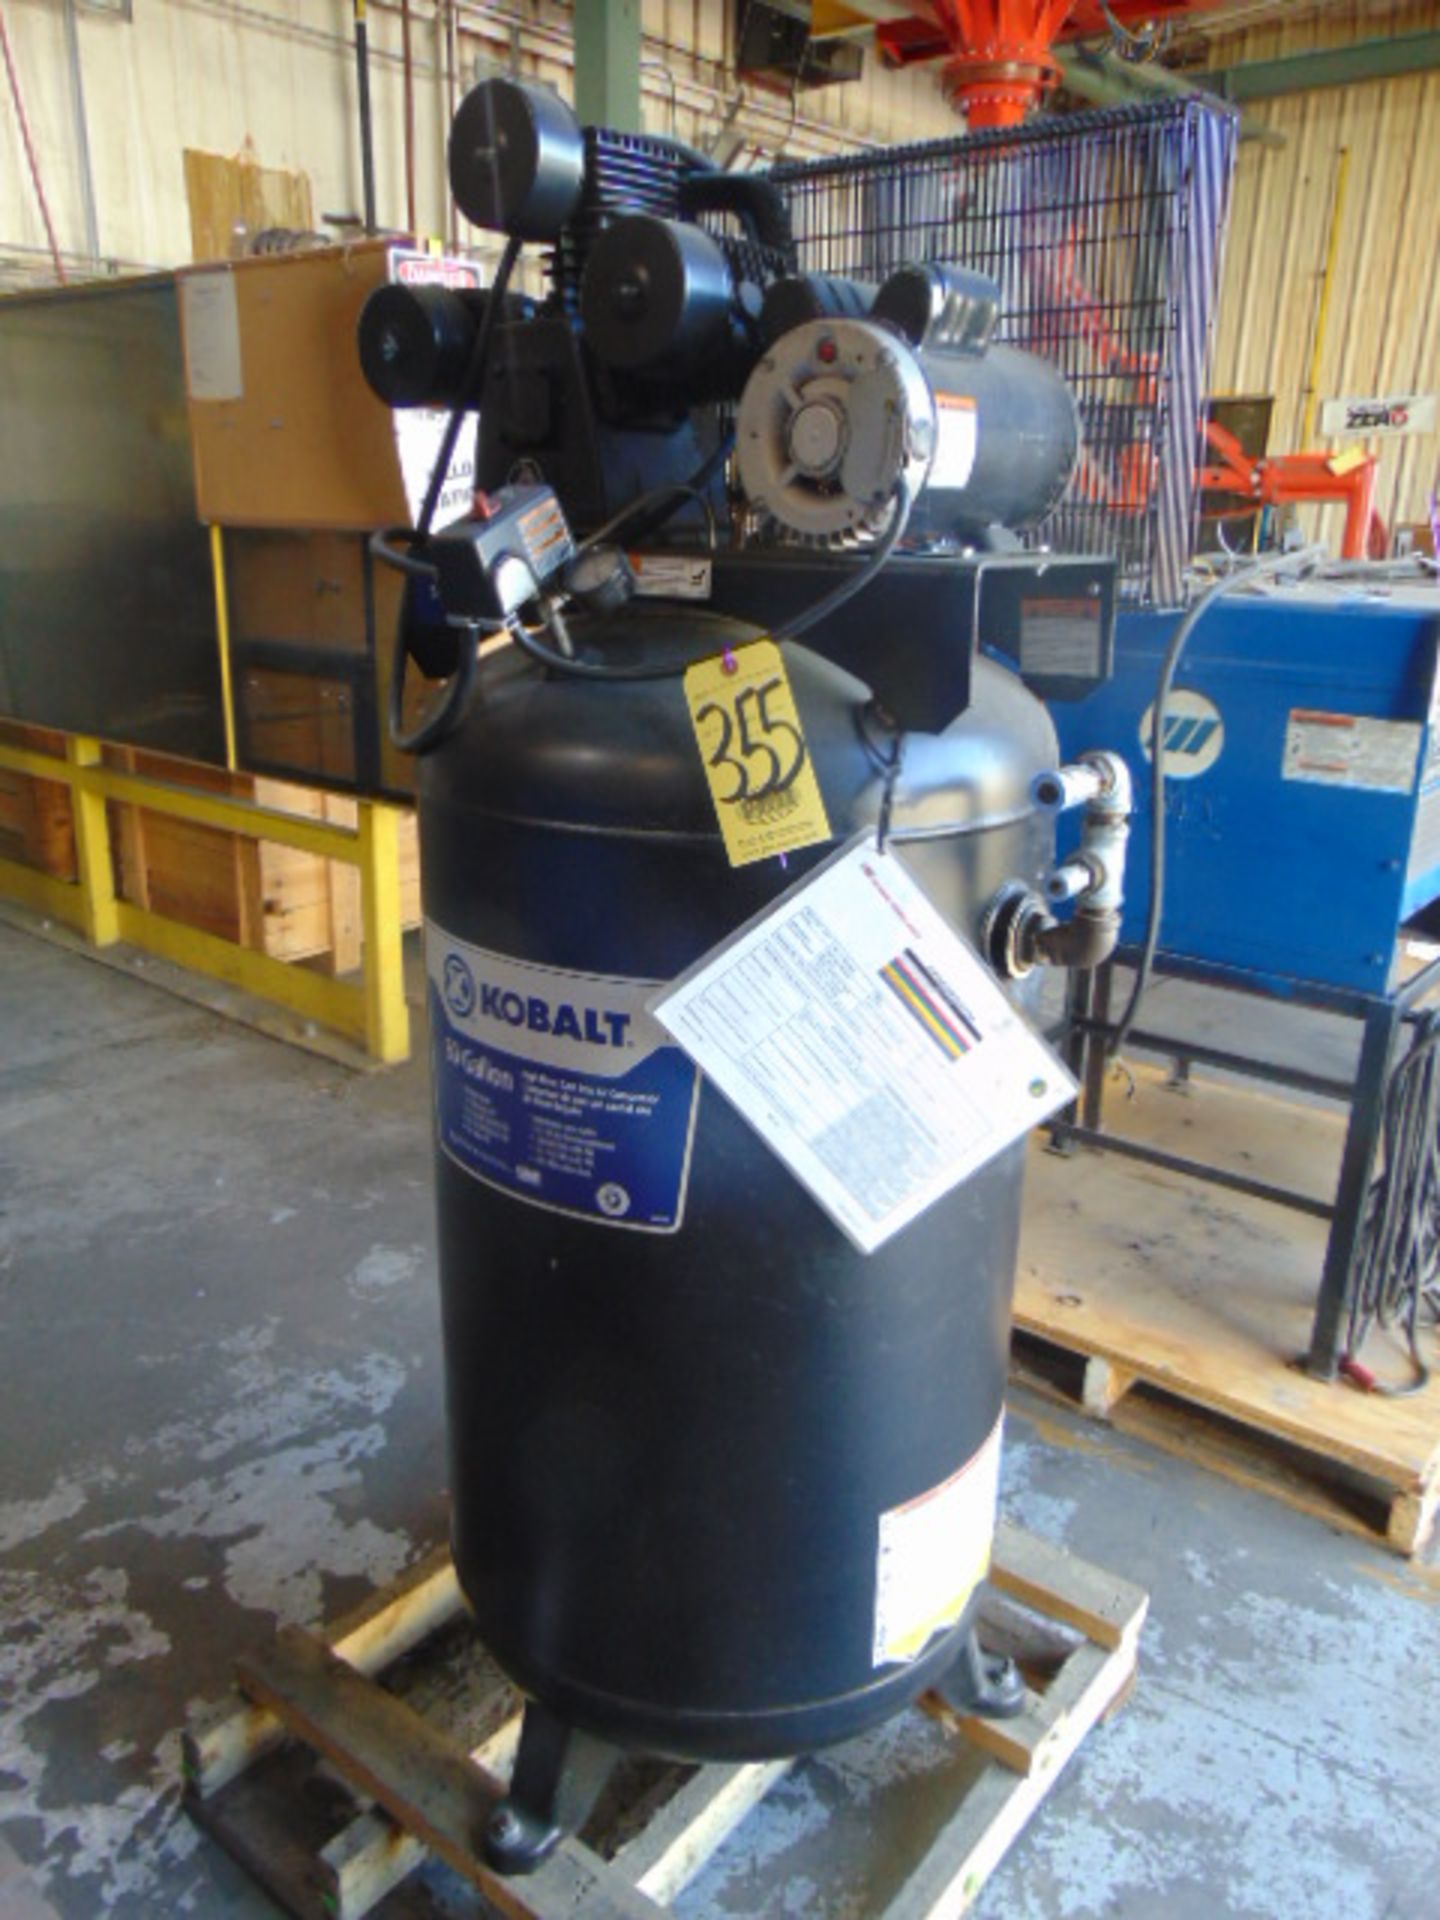 AIR COMPRESSOR, KOBALT MDL. 221580, 80 gal. vert. tank, S/N K17410863A-UV (in weld shop)